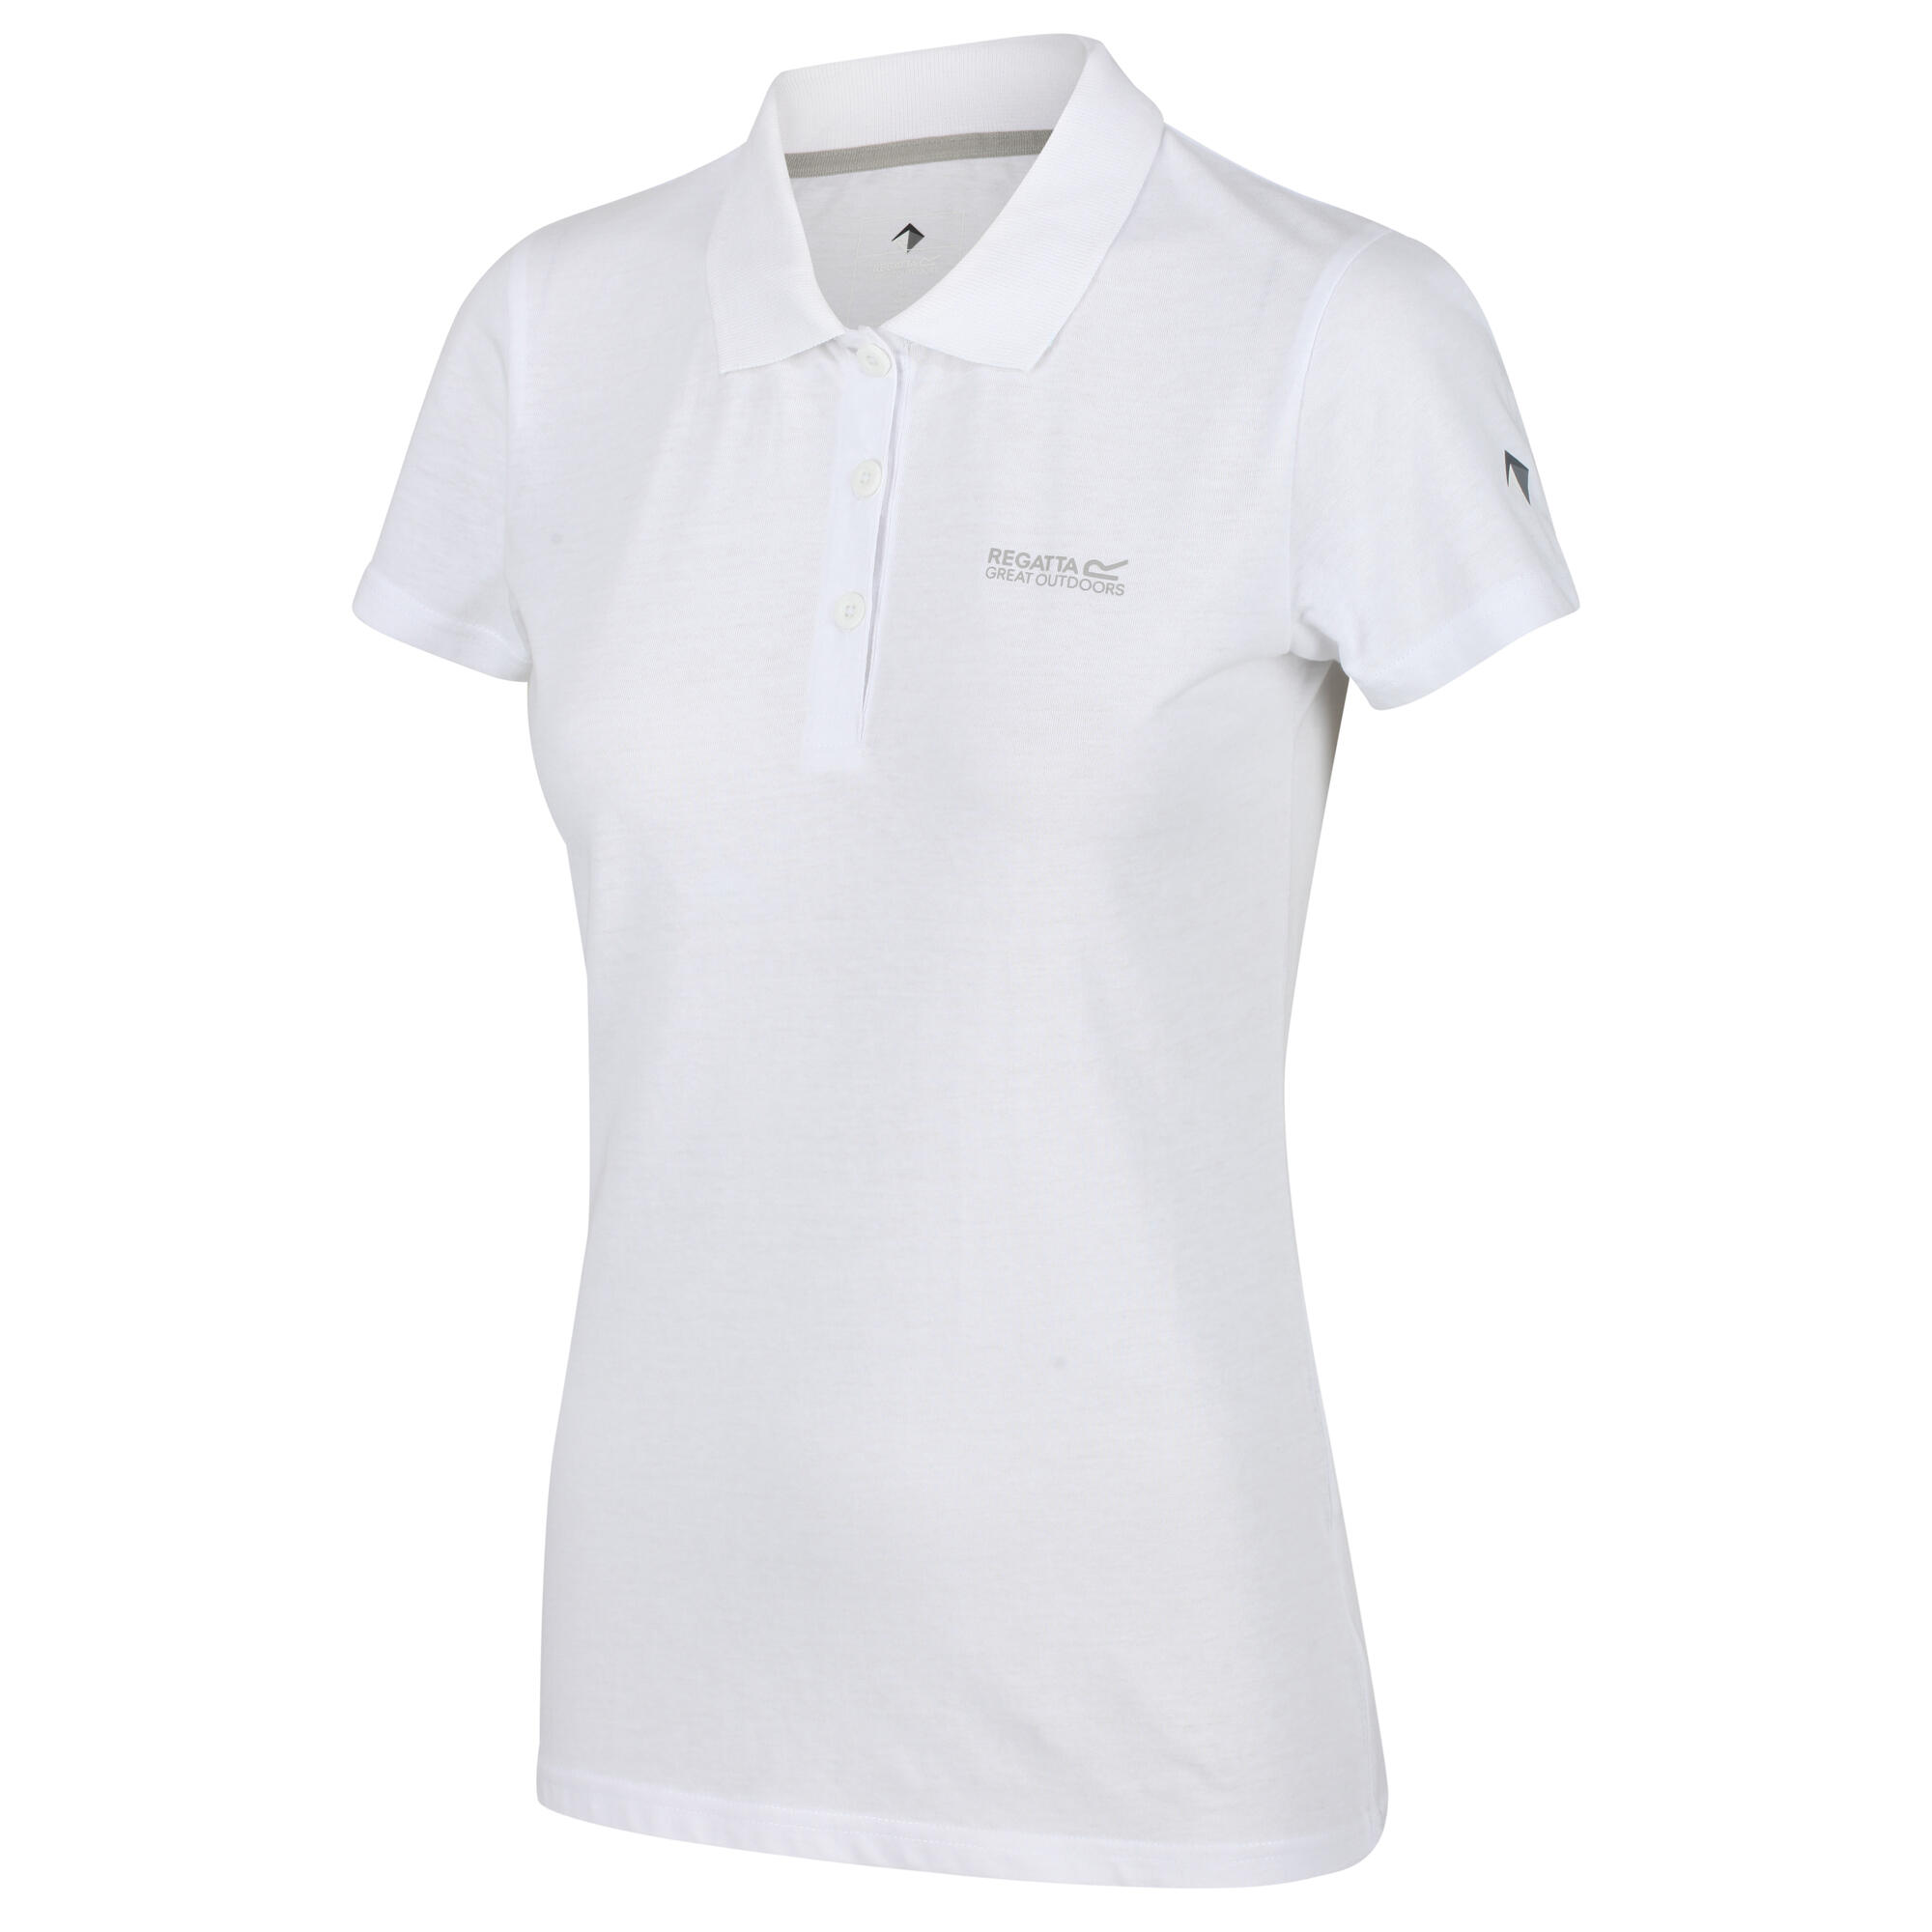 REGATTA Womens/Ladies Sinton Polo Shirt (White)